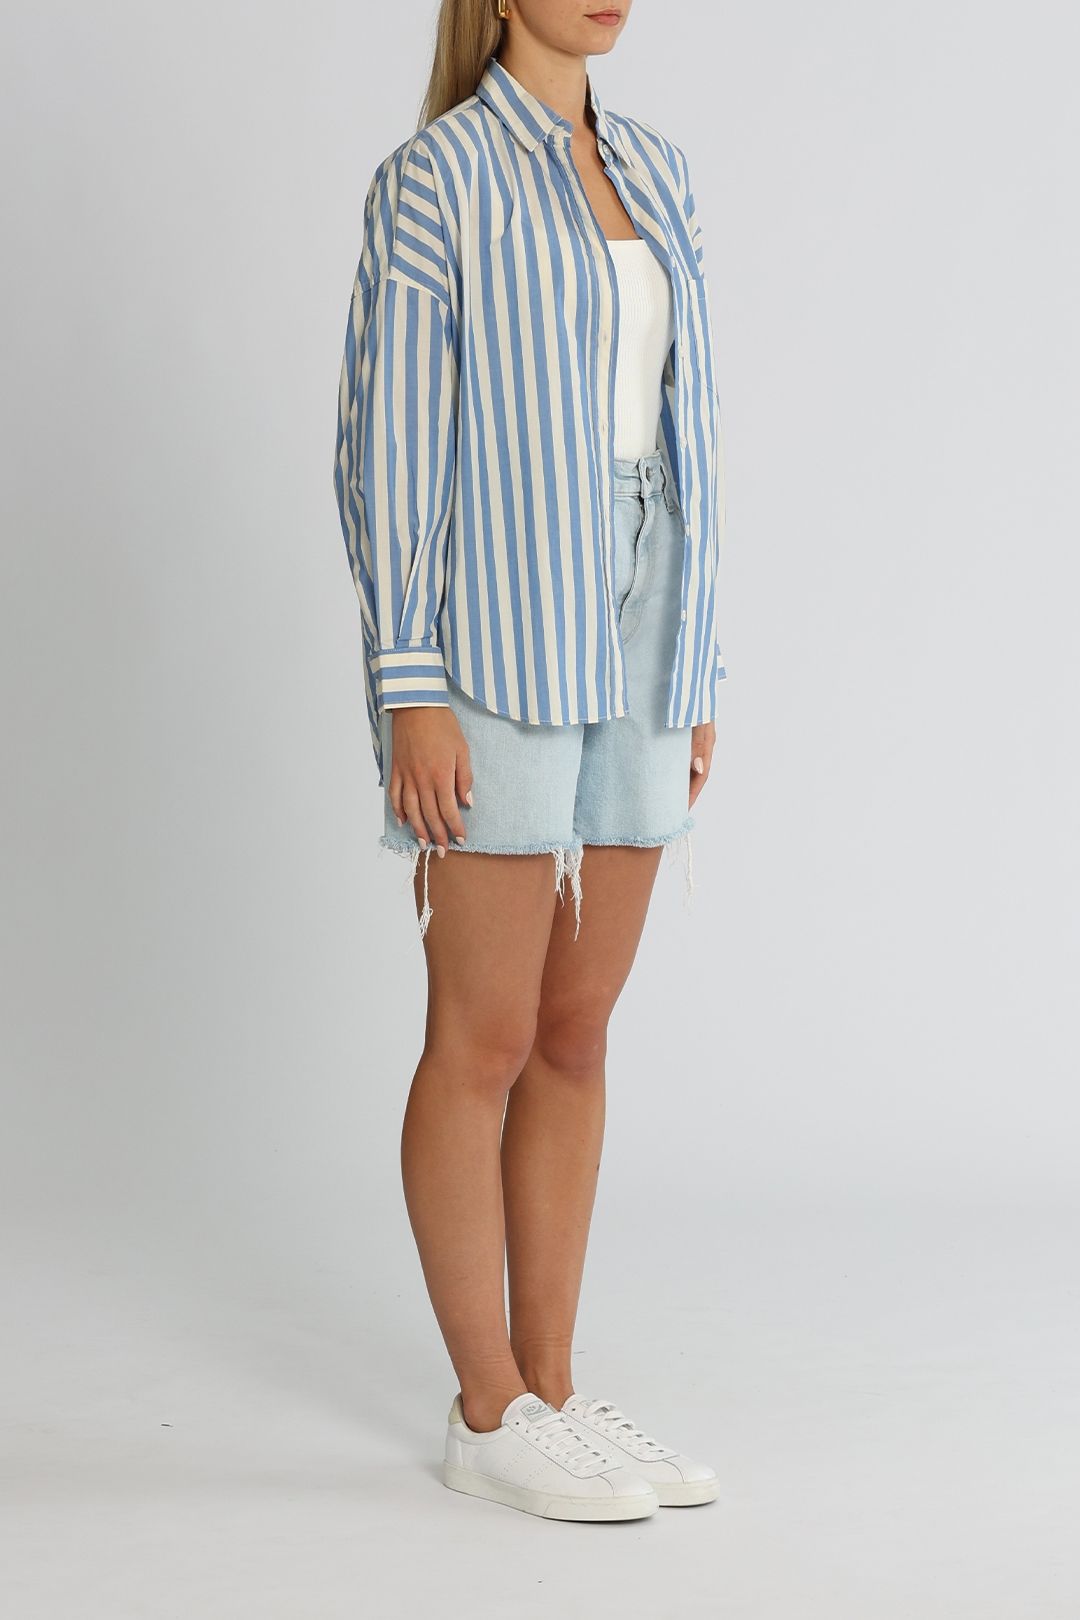 LMND Chiara Shirt Blue Stripe Long Sleeves